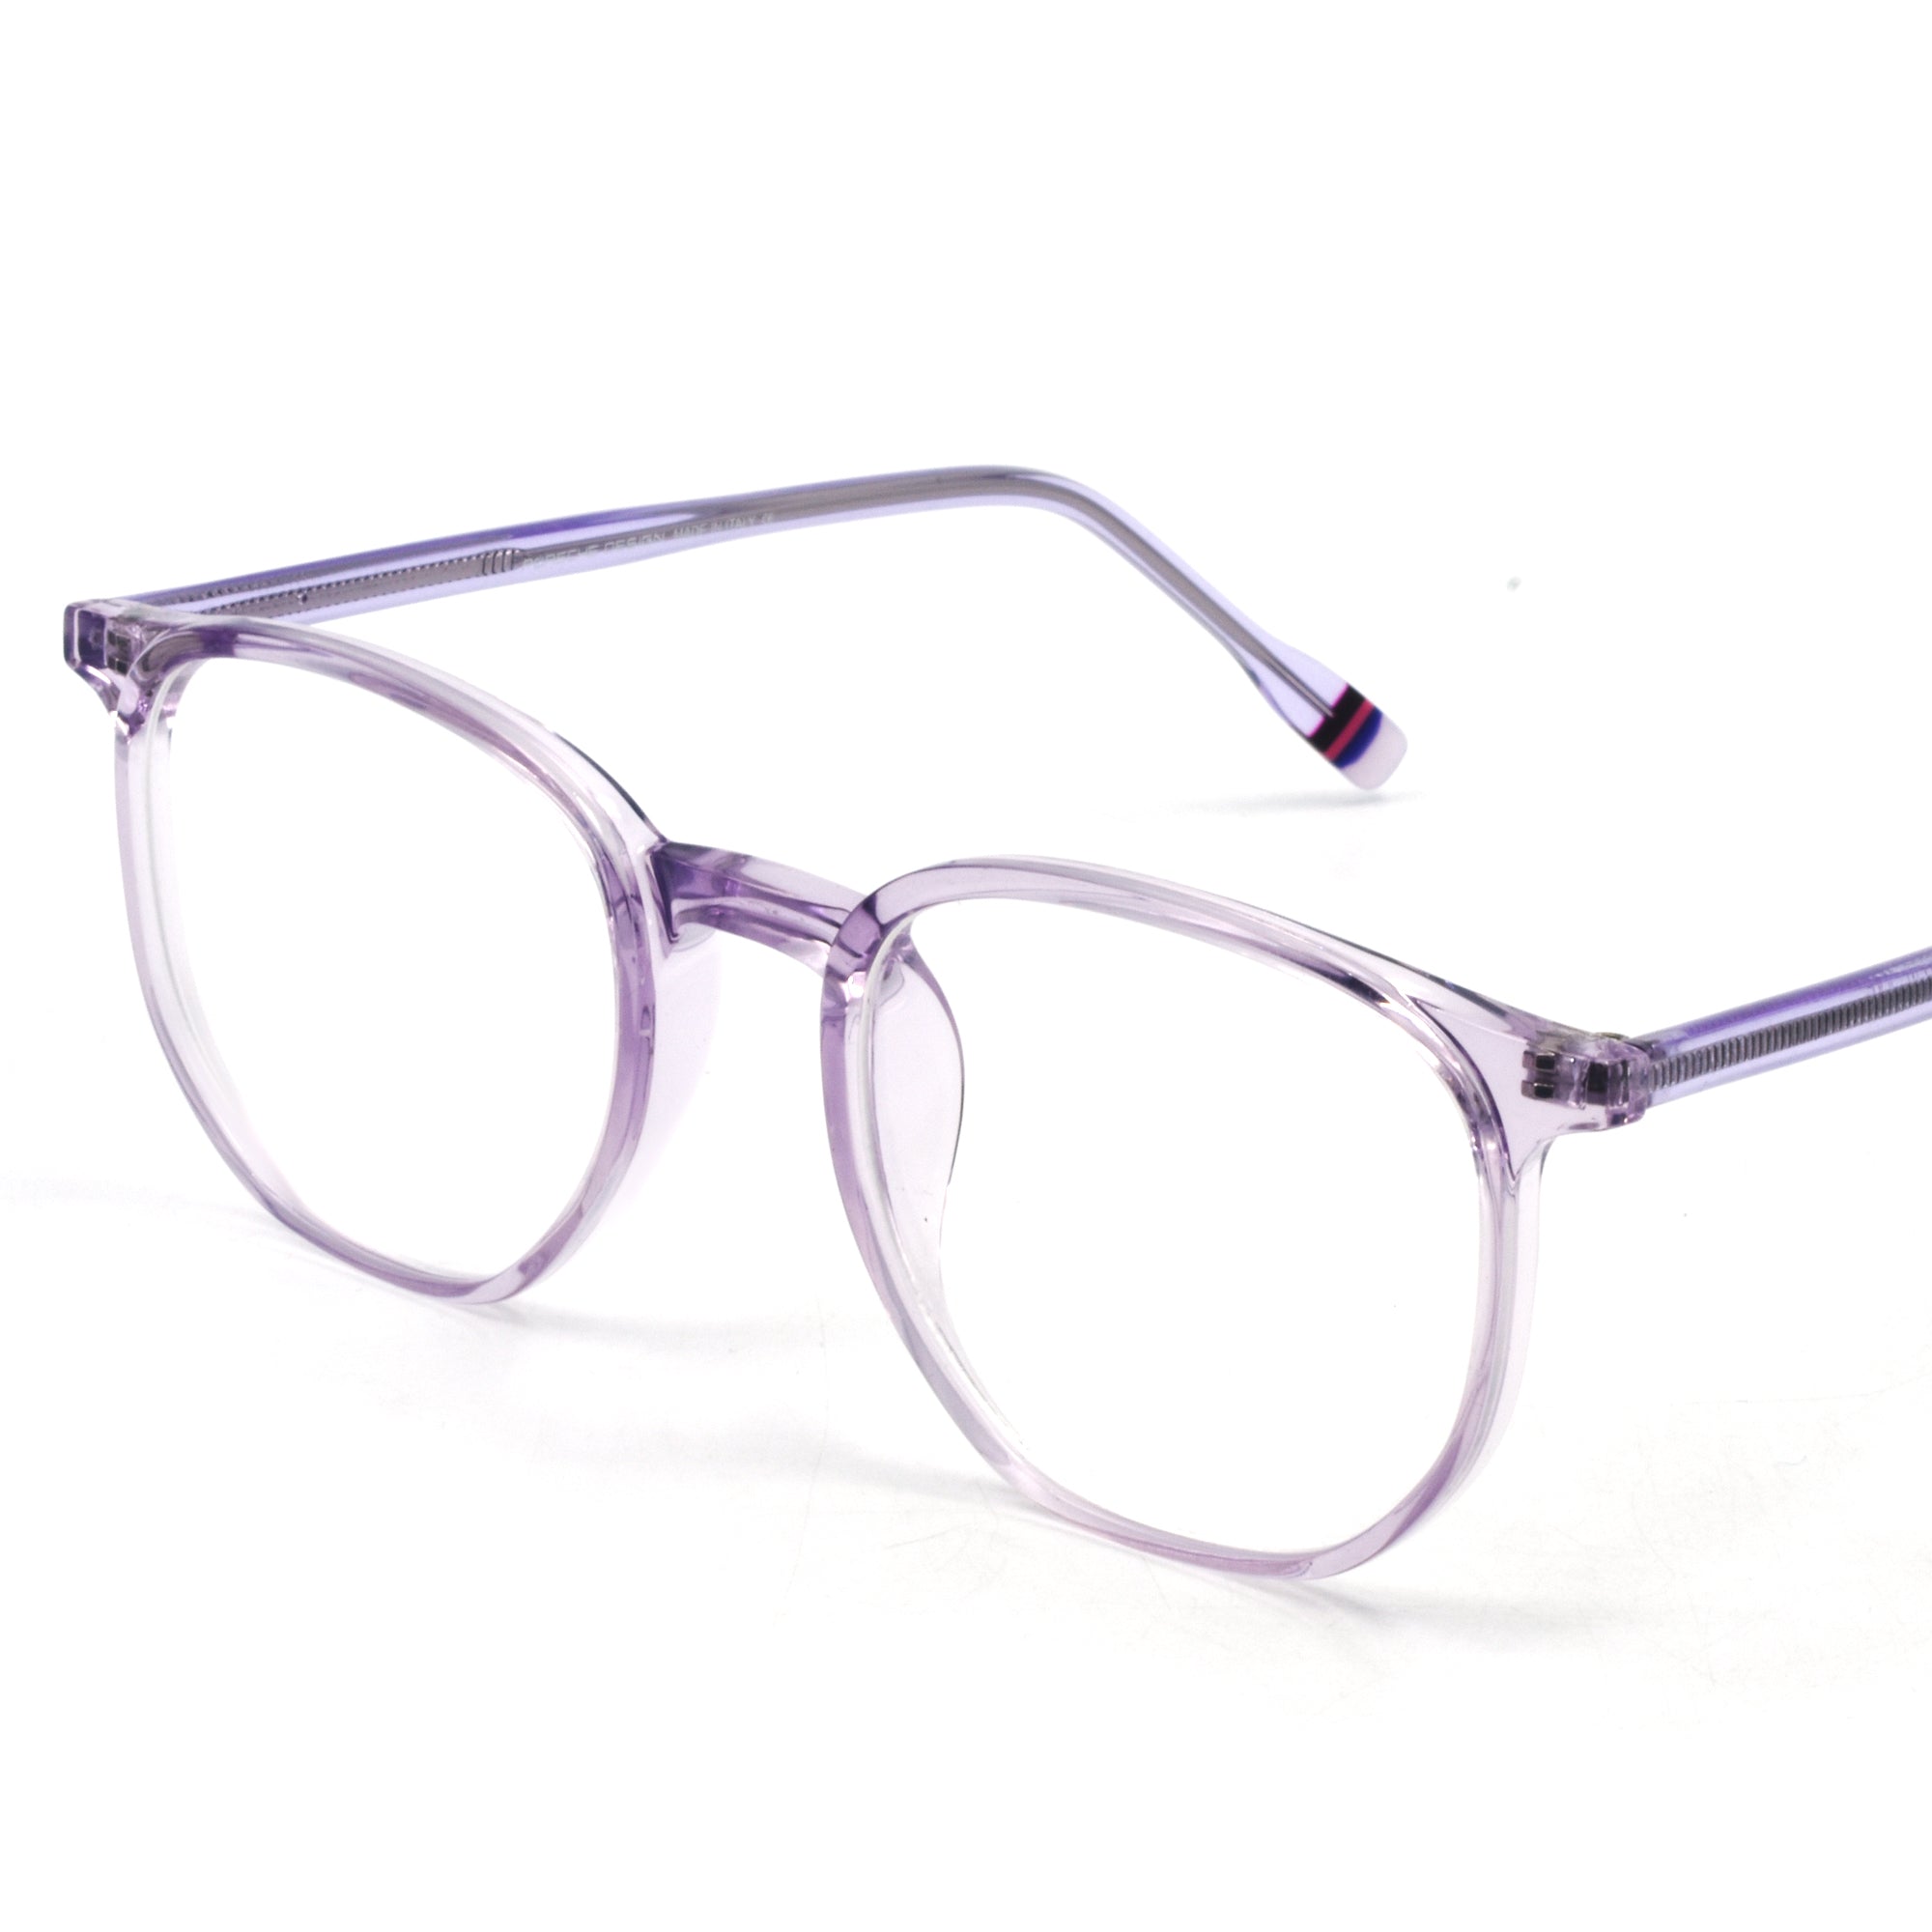 Trendy Modern Stylish Eye Glass | PRS Frame 67